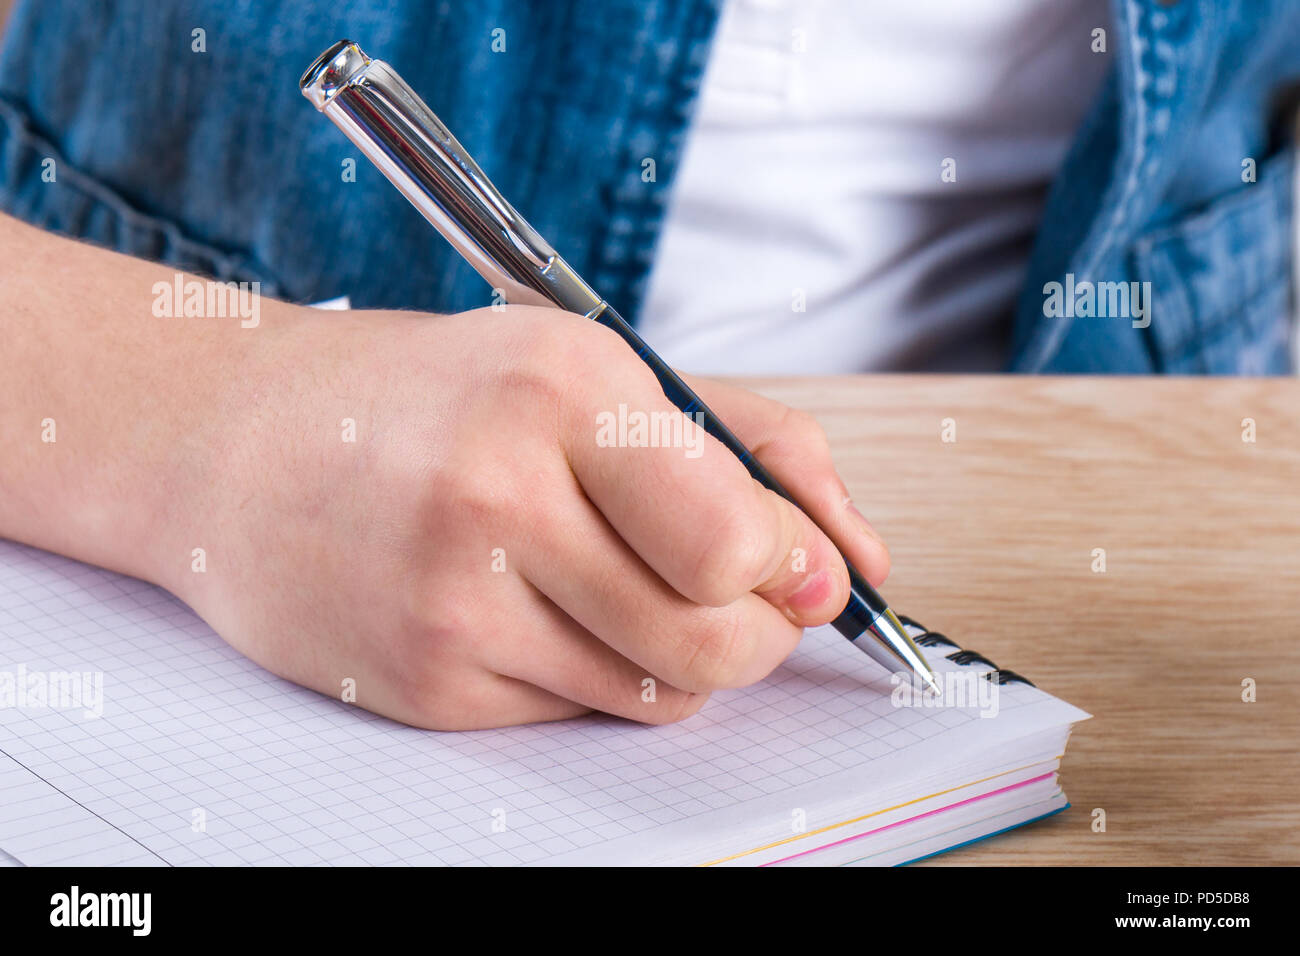 Child's Hand mit Stift. Das Kind Briefe schreiben in einem Notebook  Stockfotografie - Alamy